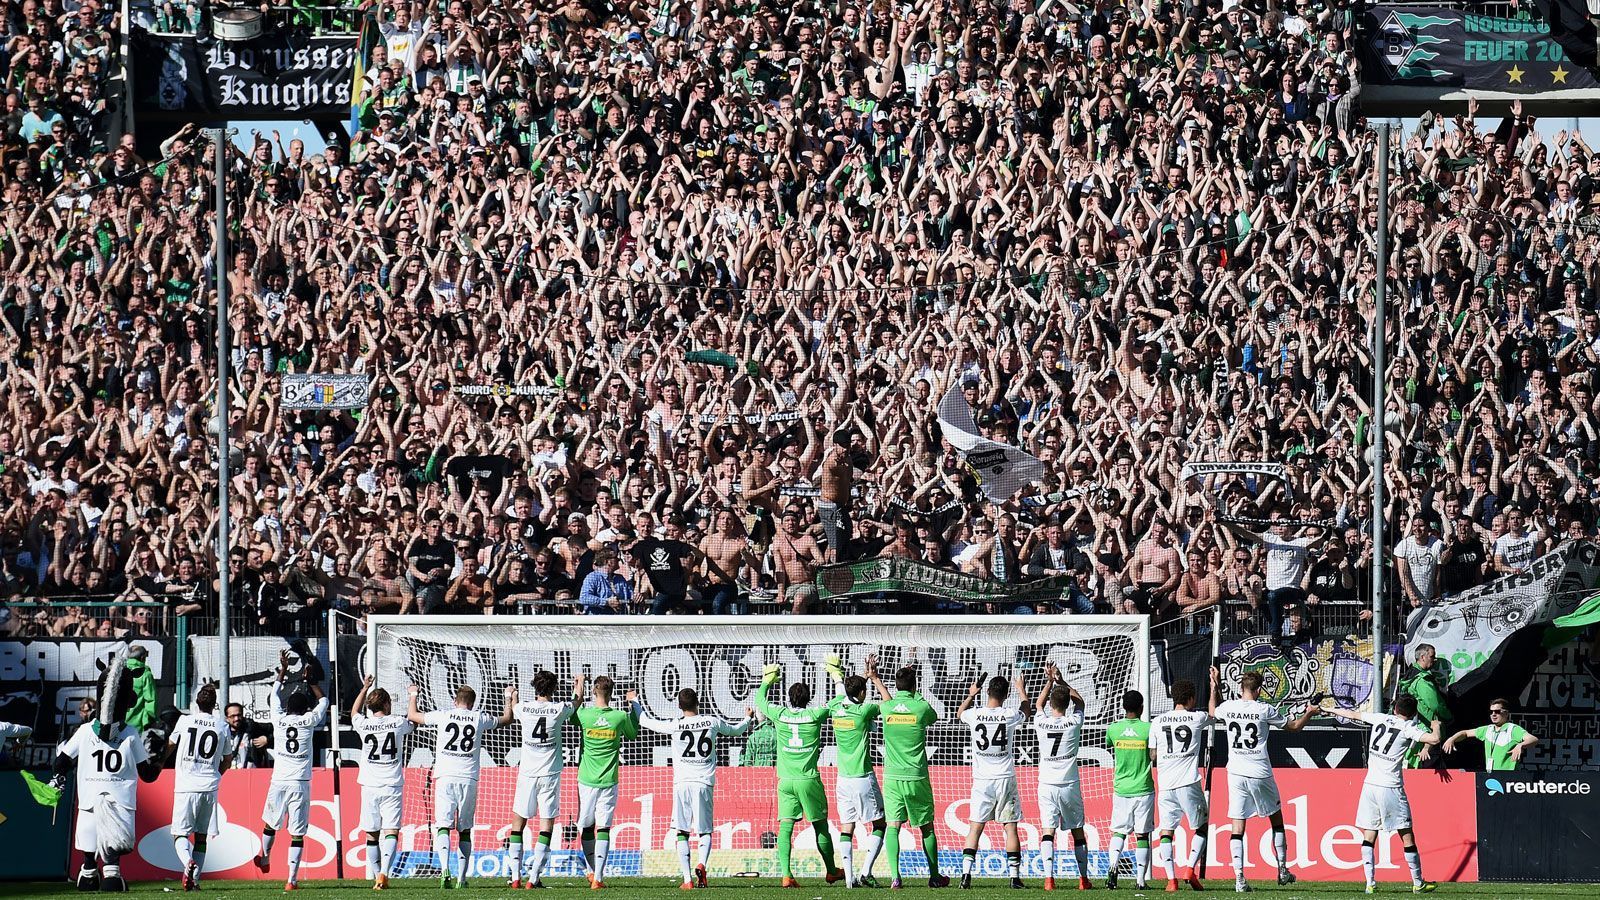 
                <strong>Borussia Mönchengladbach</strong><br>
                Stadion: Borussia Park (54.022 Plätze) - Zugelassene Fans am 4. Spieltag: 300* - Gegner: VfL Wolfsburg - *Auch in Gladbach gab es zu viele Neuinfektionen, so dass lediglich 300 Fans das Stadion besuchen durften.
              